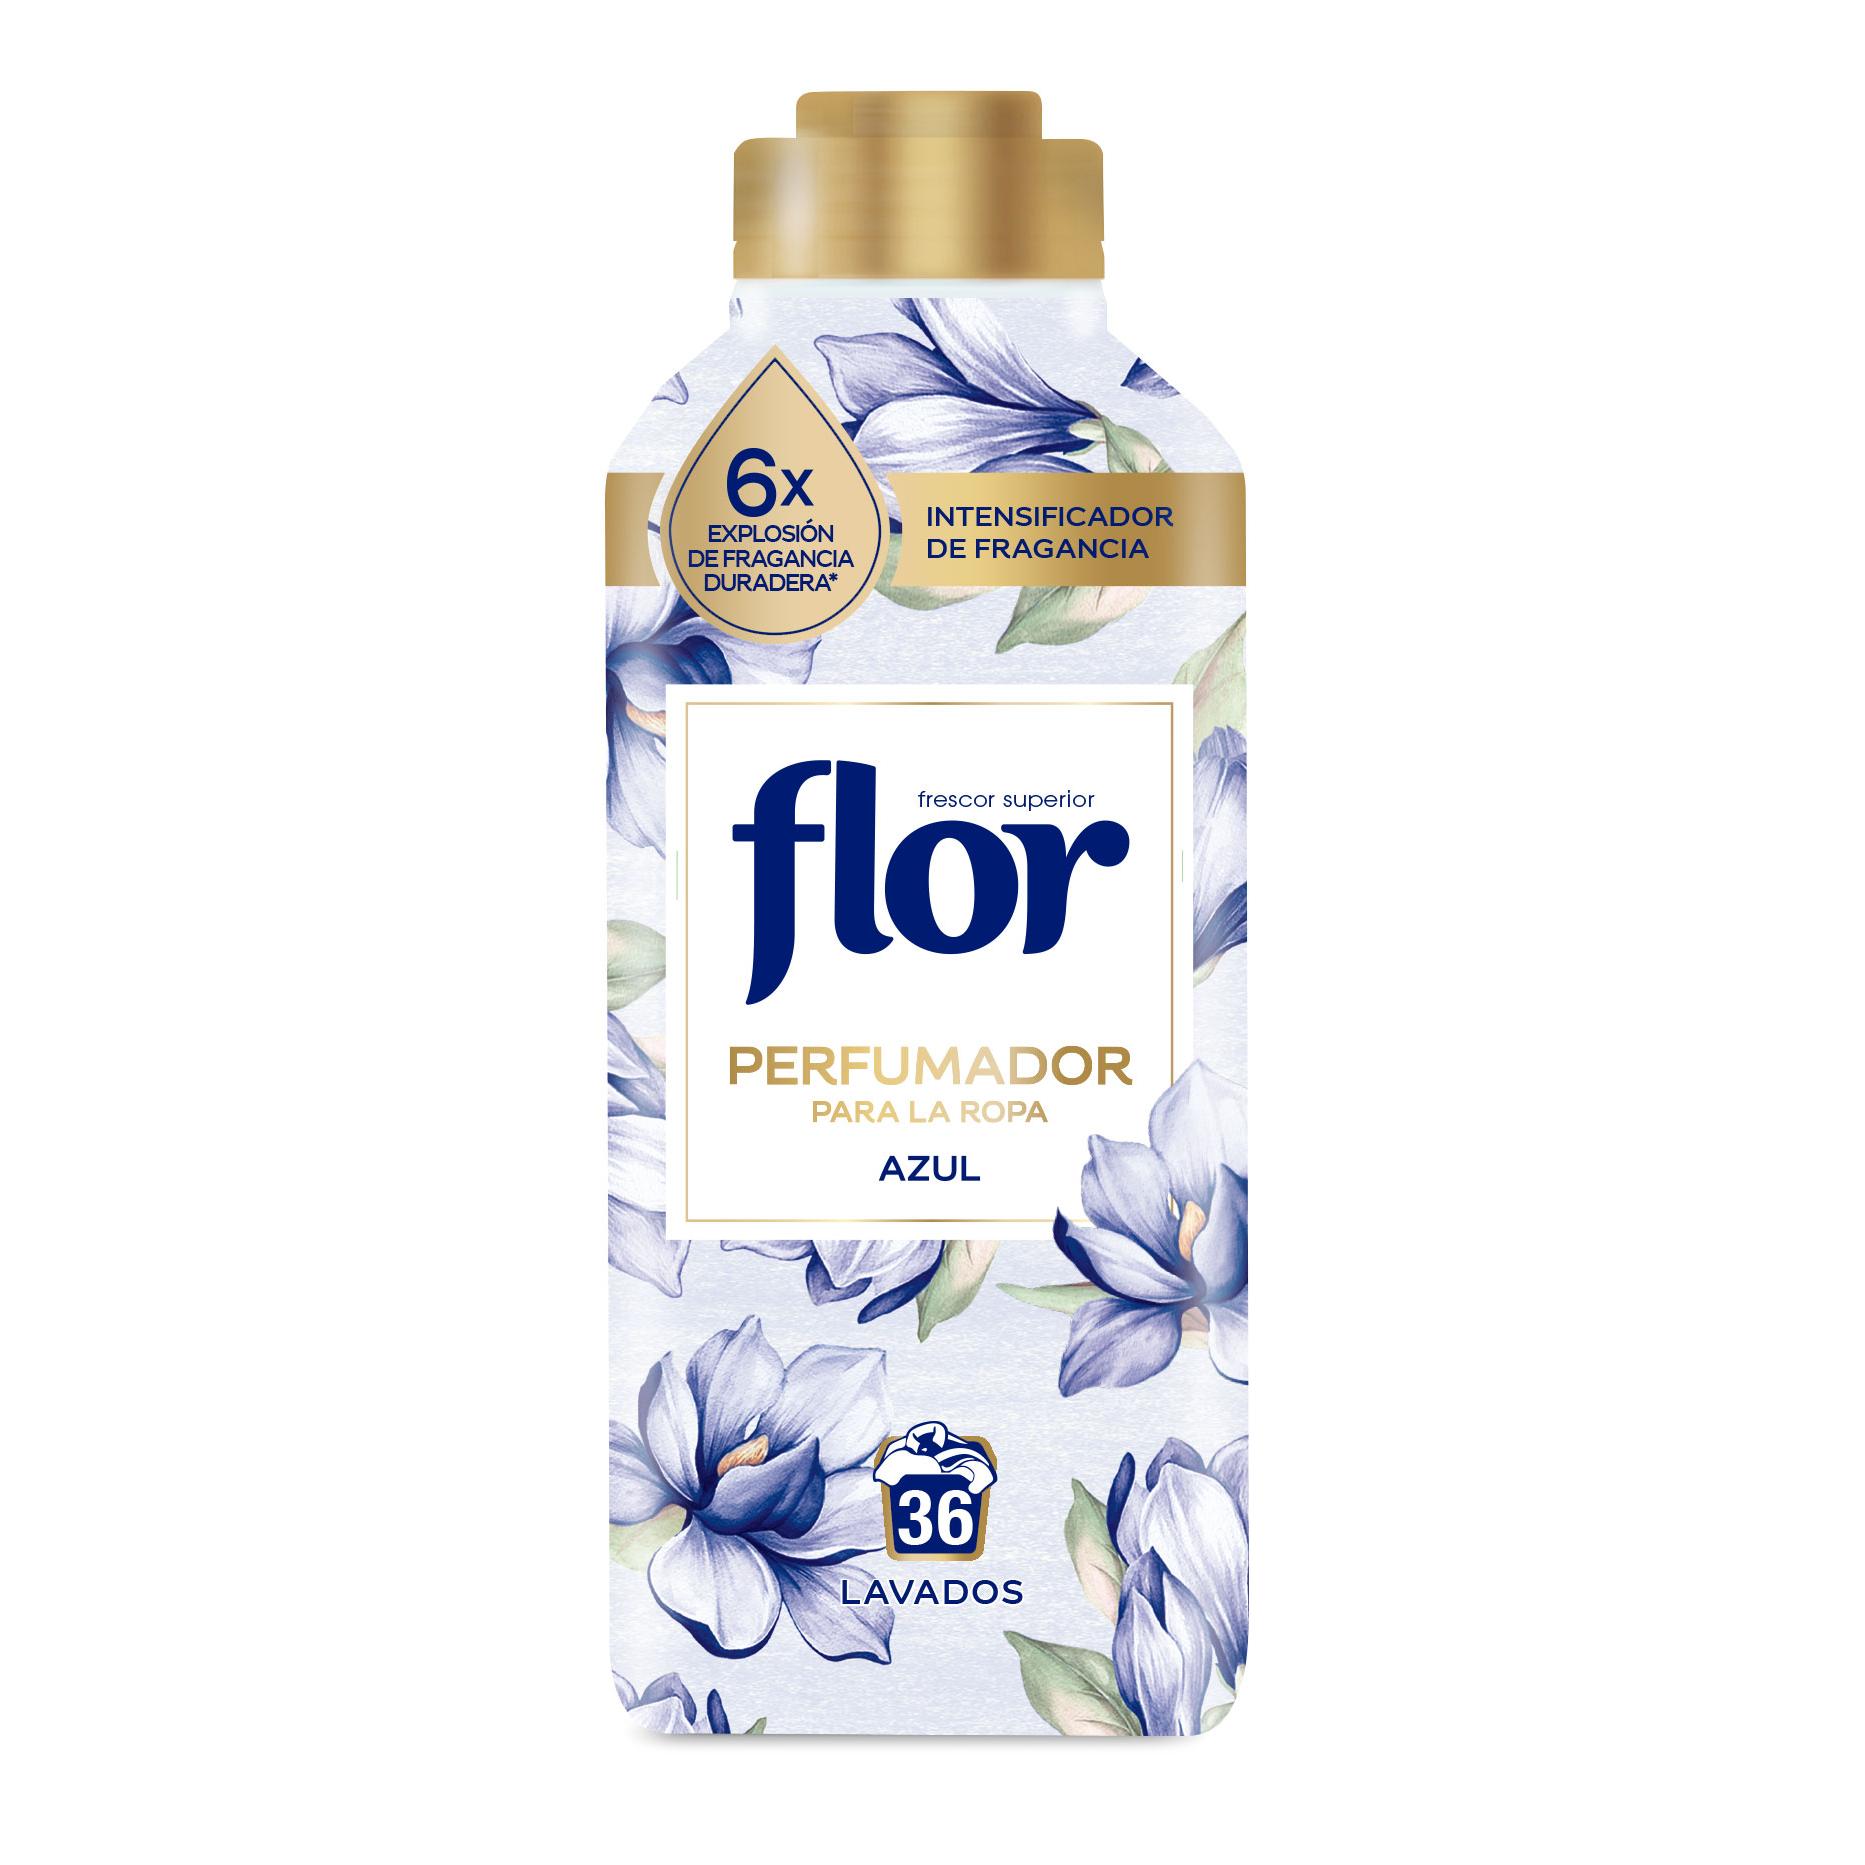 Oferta Flash! Suavizante concentrado Flor Delicado (624 lavados